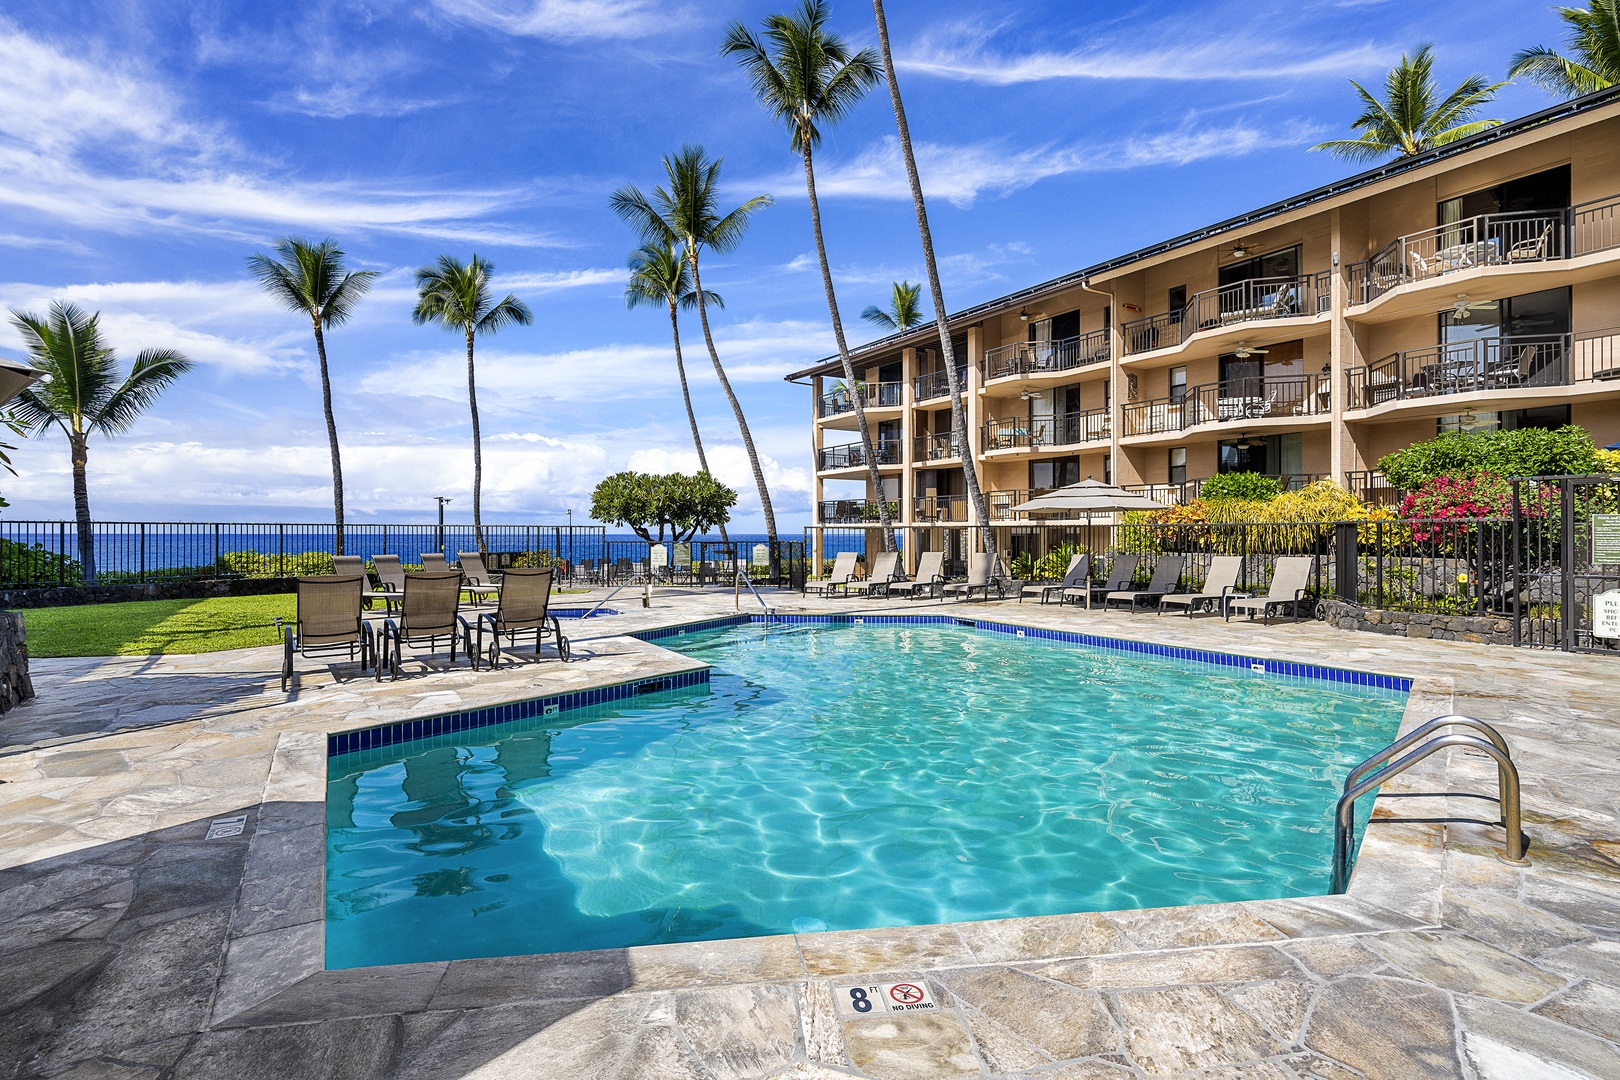 Kailua Kona Vacation Rentals, Kona Makai 6305 - Kona Makai pool & hot tub!